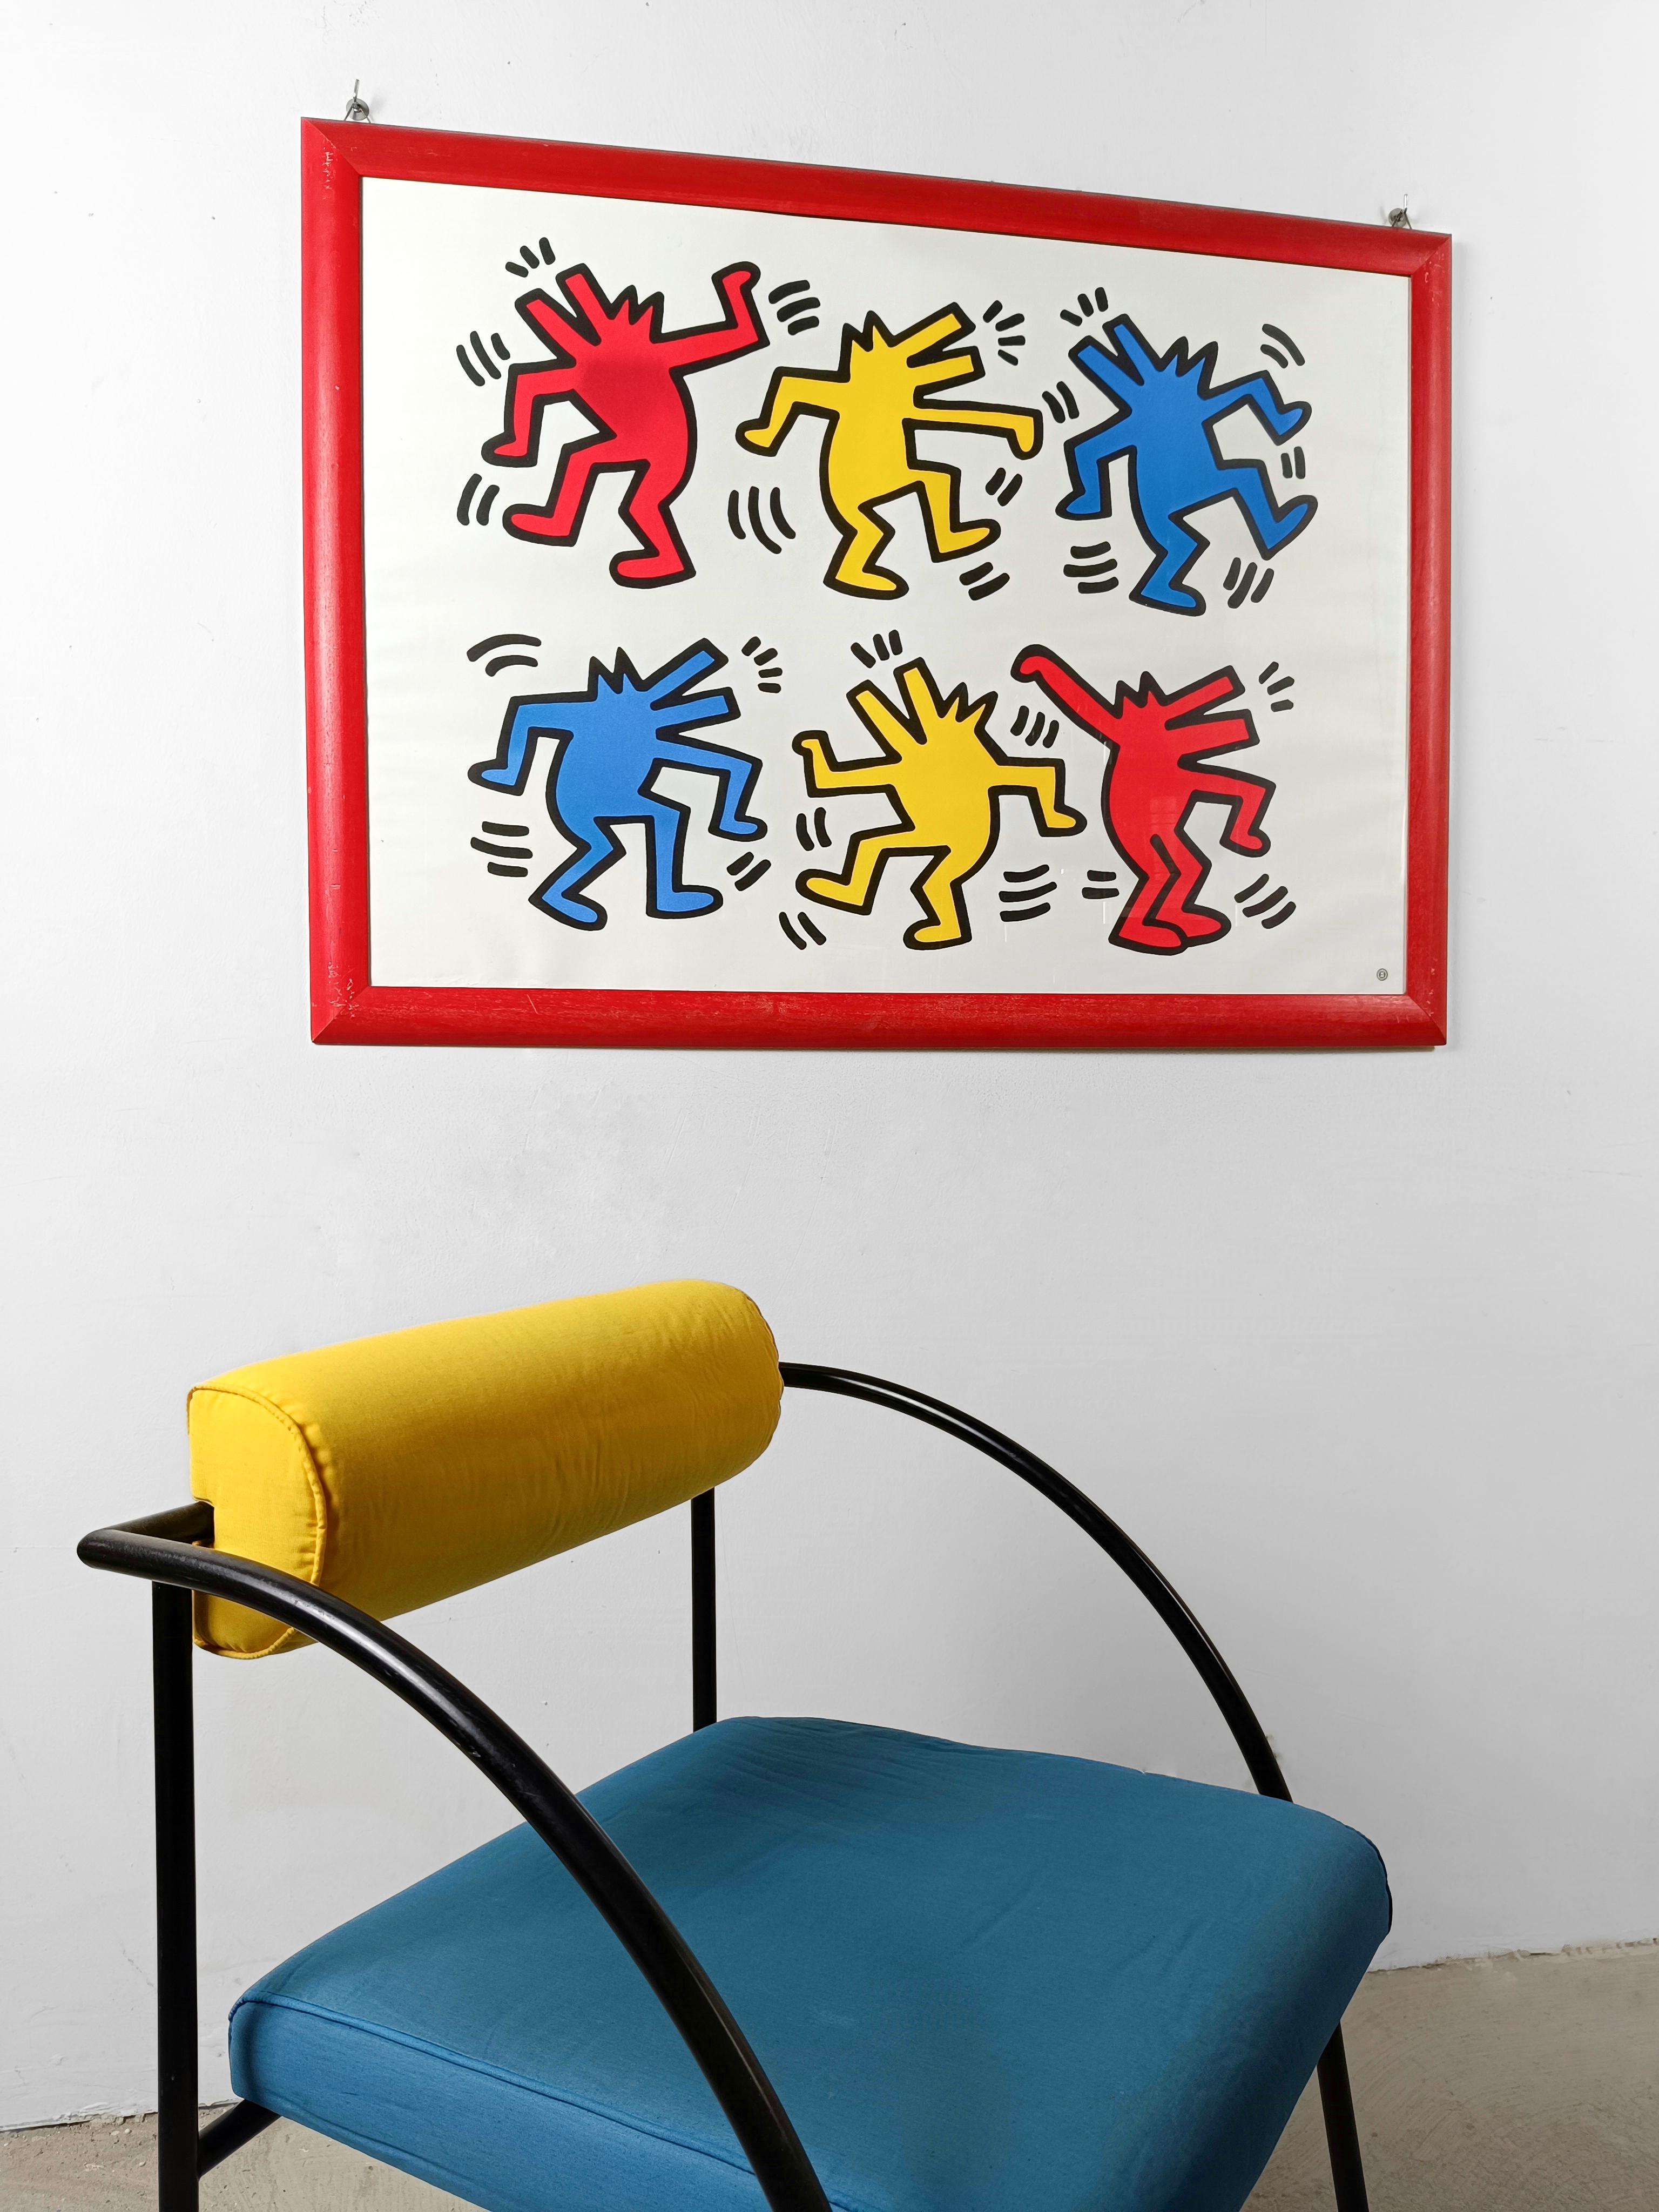 Großes Poster gedruckt in 4 Farben Offset in Frankreich von Nouvelles Images S.A. autorisiert, wie durch den Stempel sichtbar, aus dem Nachlass von Keith Haring.

Das Thema dieses Plakats lautet 